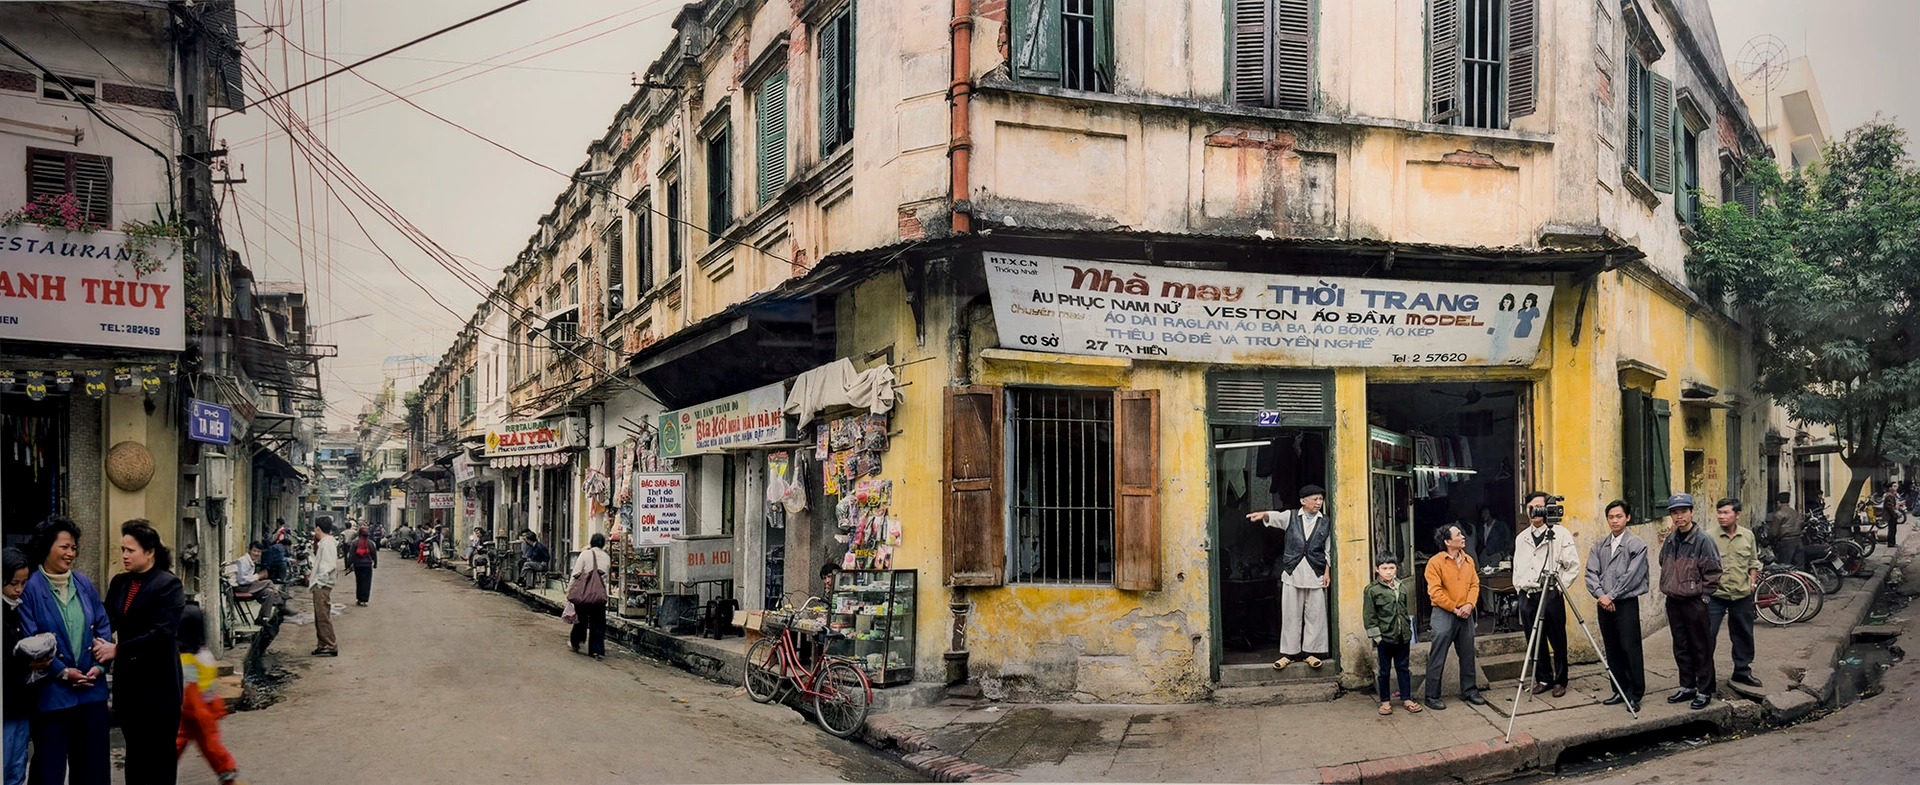 Những bức ảnh màu hoài niệm về Hà Nội một thời gian khó những năm 80 - Ảnh 4.